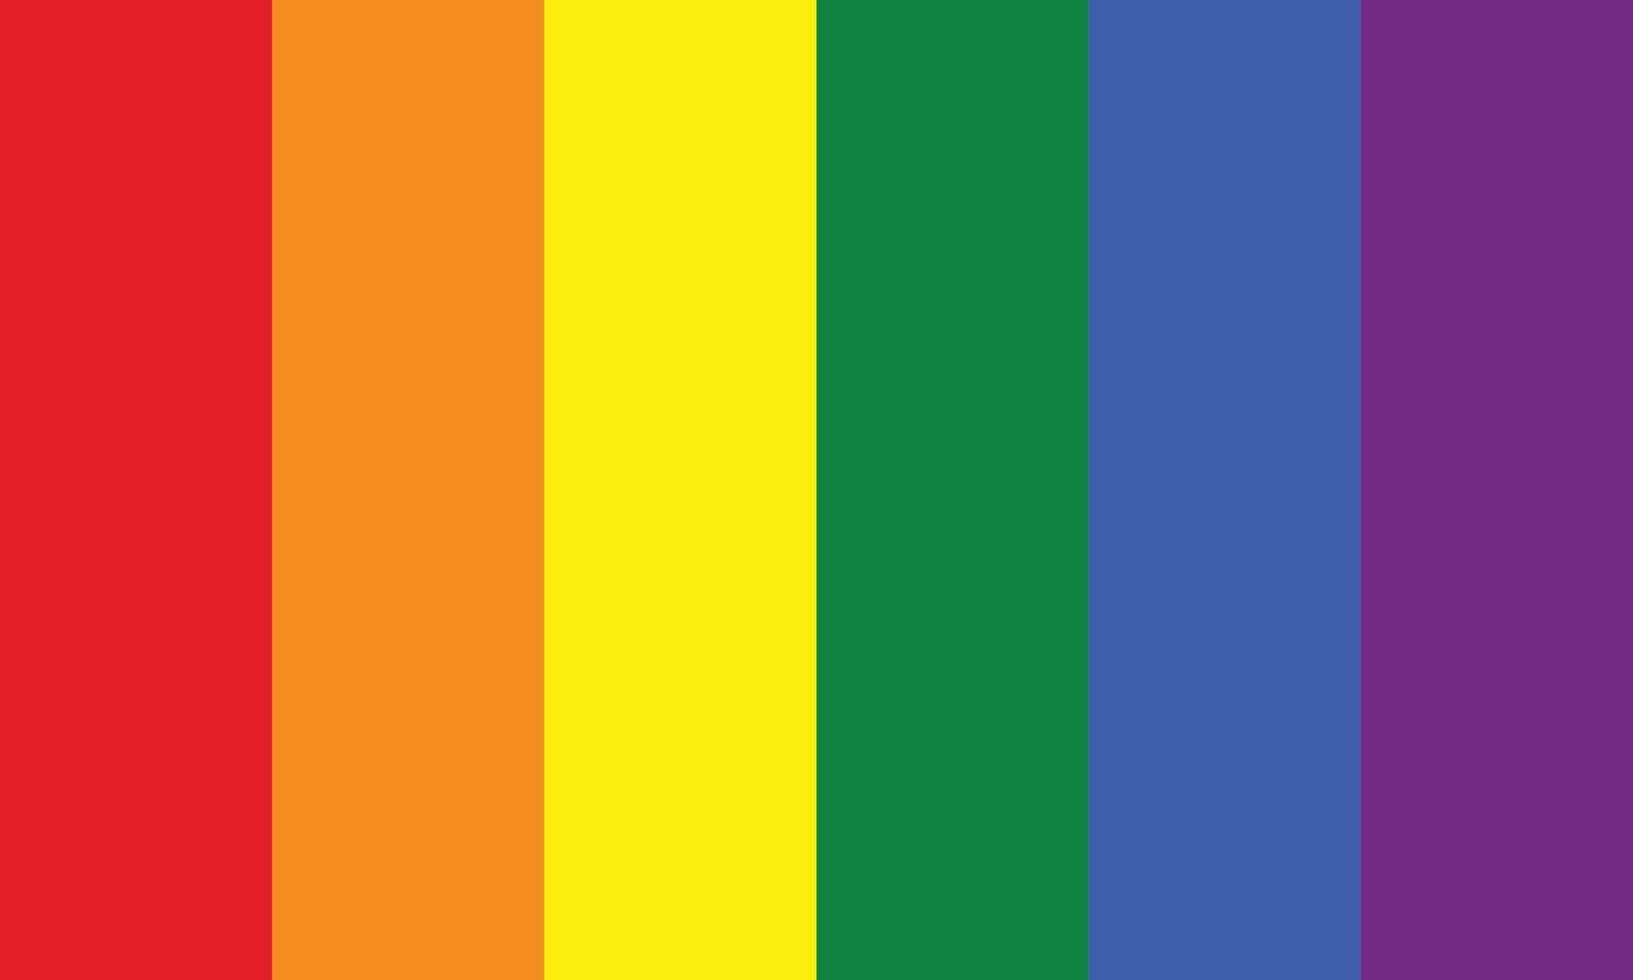 couleurs du drapeau arc-en-ciel du symbole du groupe lgbt, vecteur